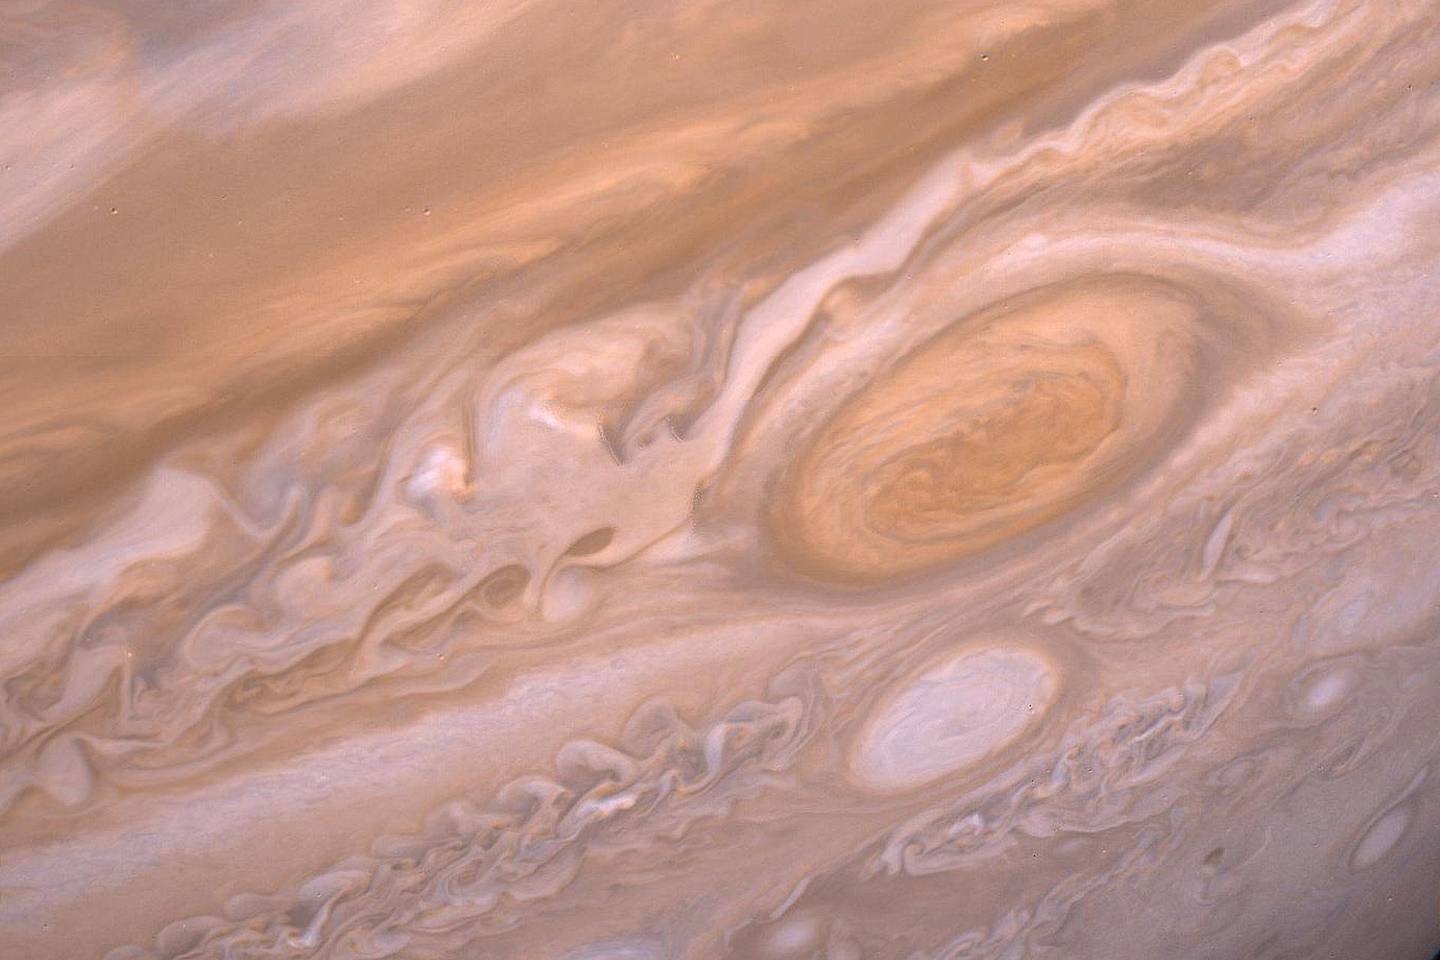  Ties Jupiterio pusiauju nuolatos pučia stiprus vėjas, vadinamas čiurkšline srove. Maždaug kas ketverius Žemės metus srovės kryptis pasikeičia – kartais ji pučia į rytus, kartais į vakarus<br> NASA nuotr.